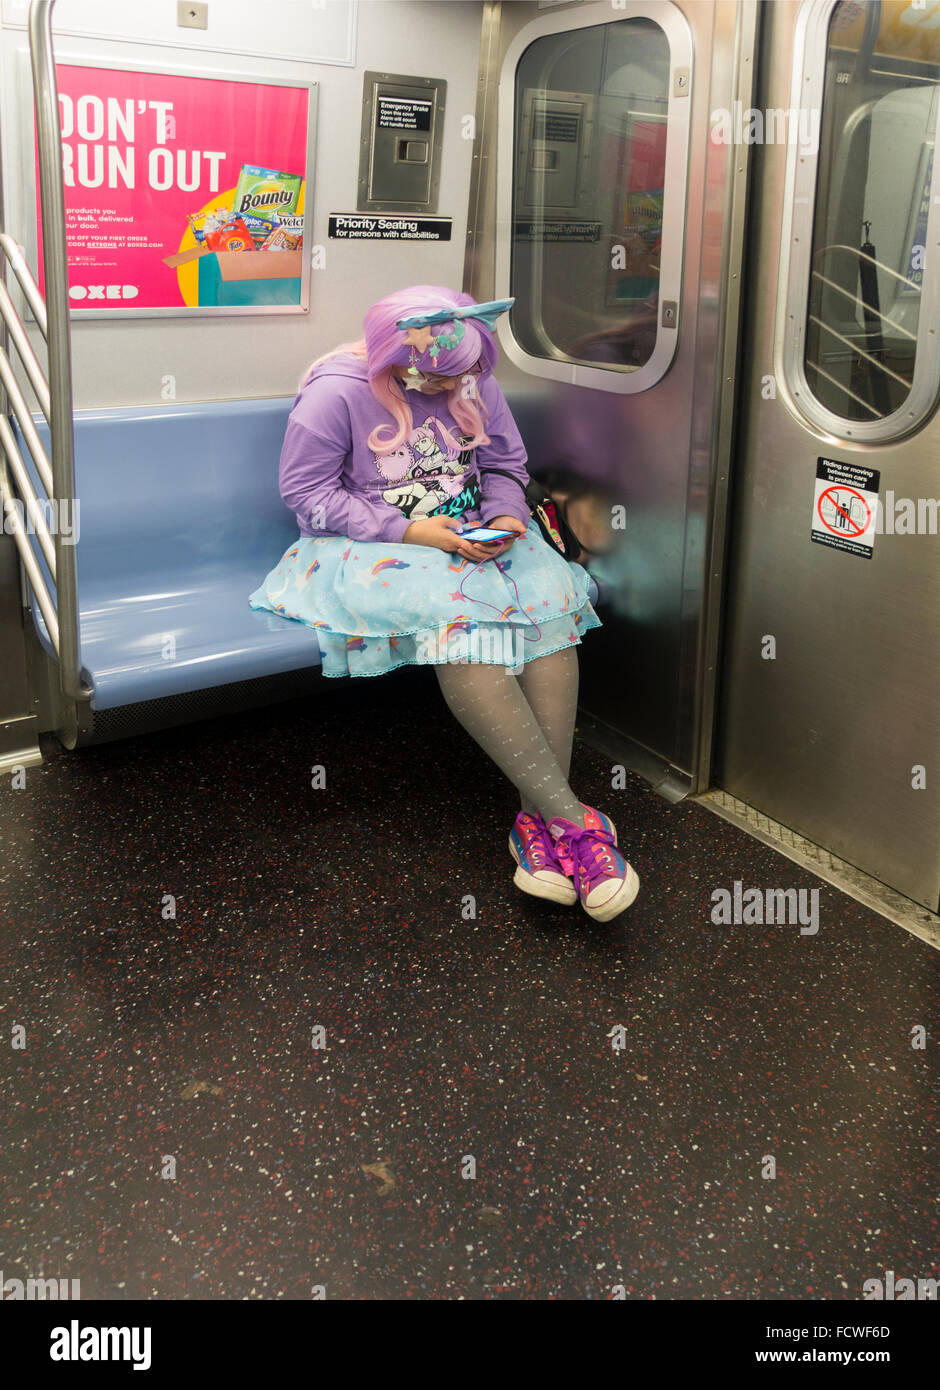 Cosplay Costume donna vestito in fata vestito interno treno della metropolitana Auto a New York Foto Stock